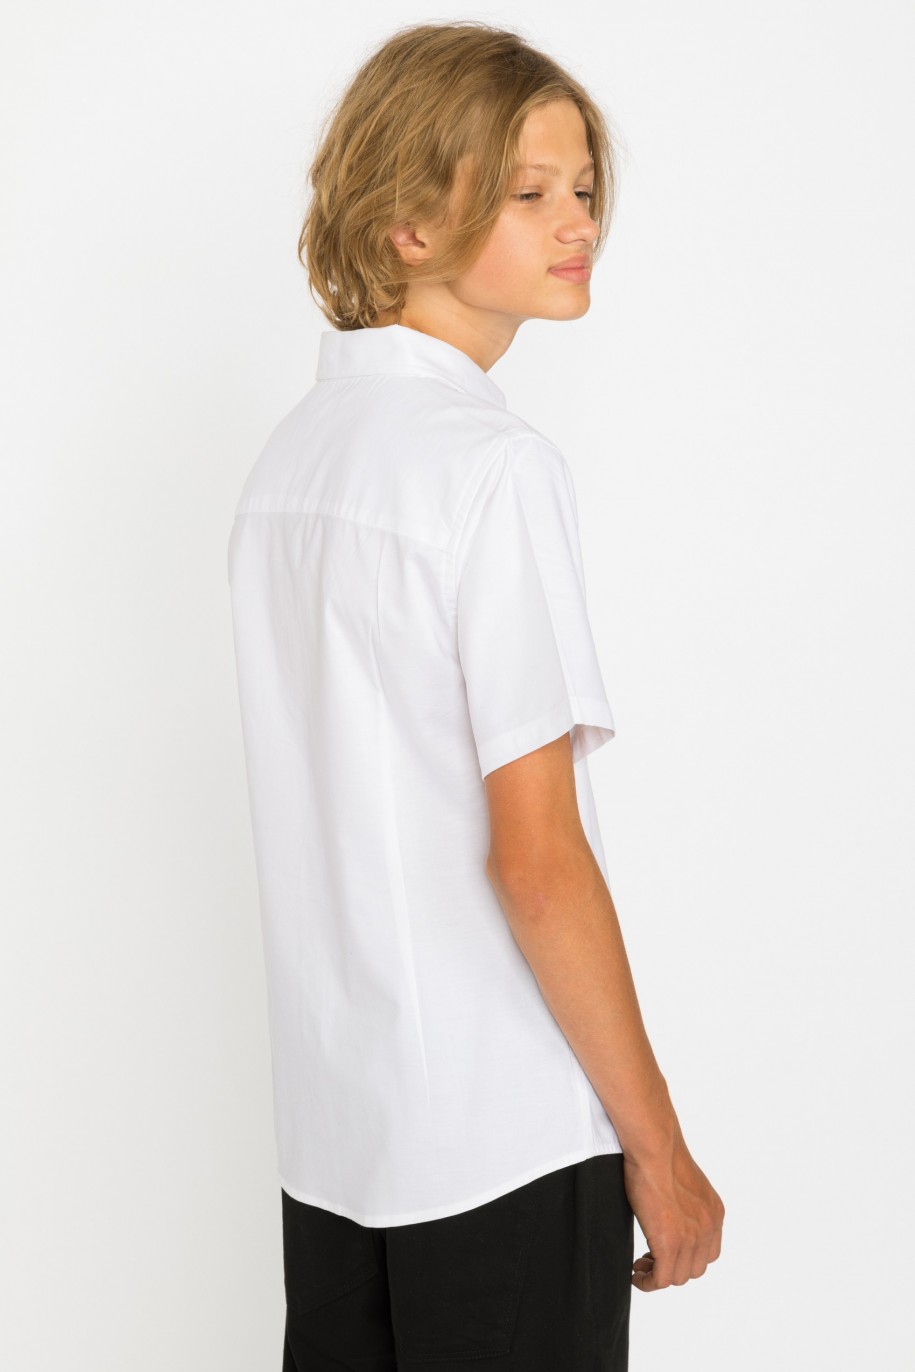 Biała klasyczna koszula z krótkim rękawem dla chłopaka - 28974